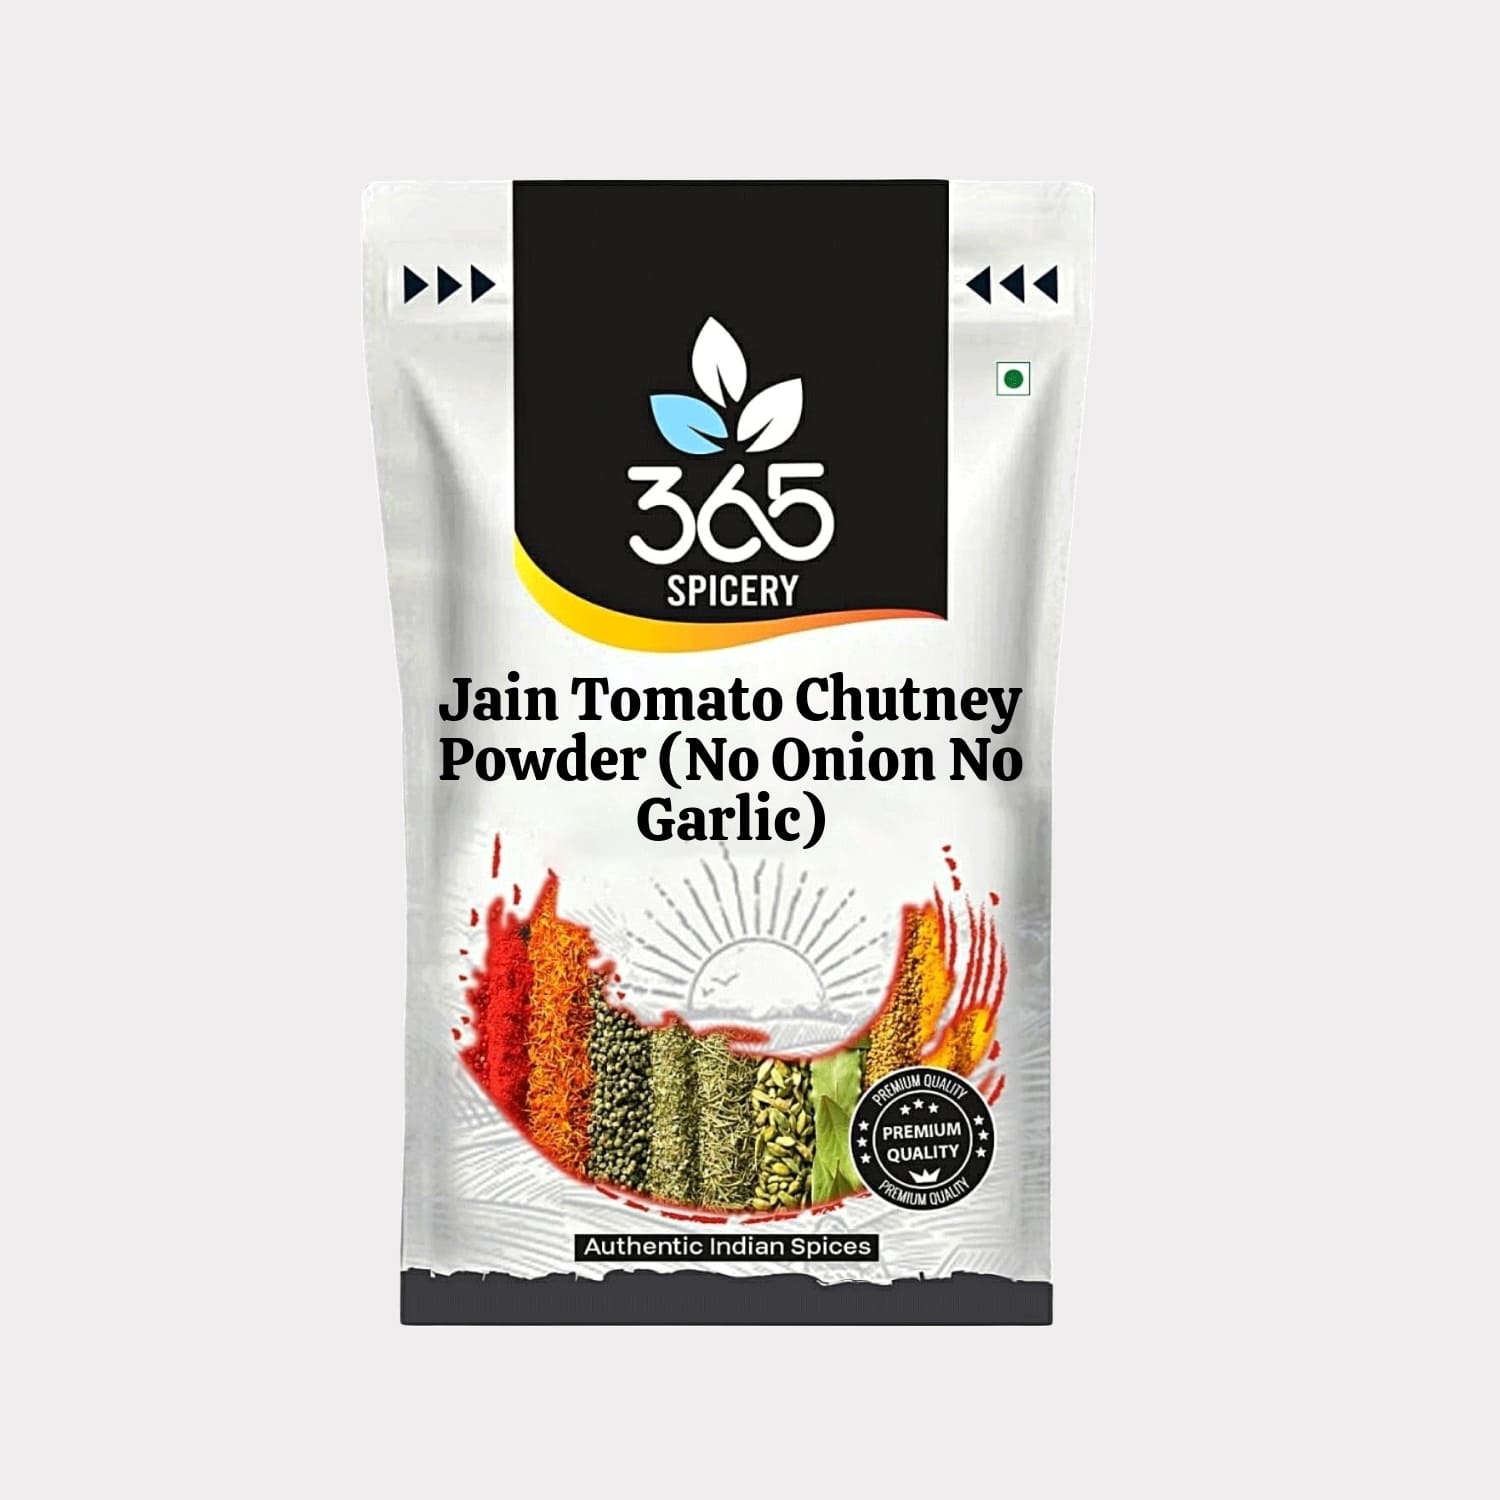 Jain Tomato Chutney Powder (No Onion No Garlic)